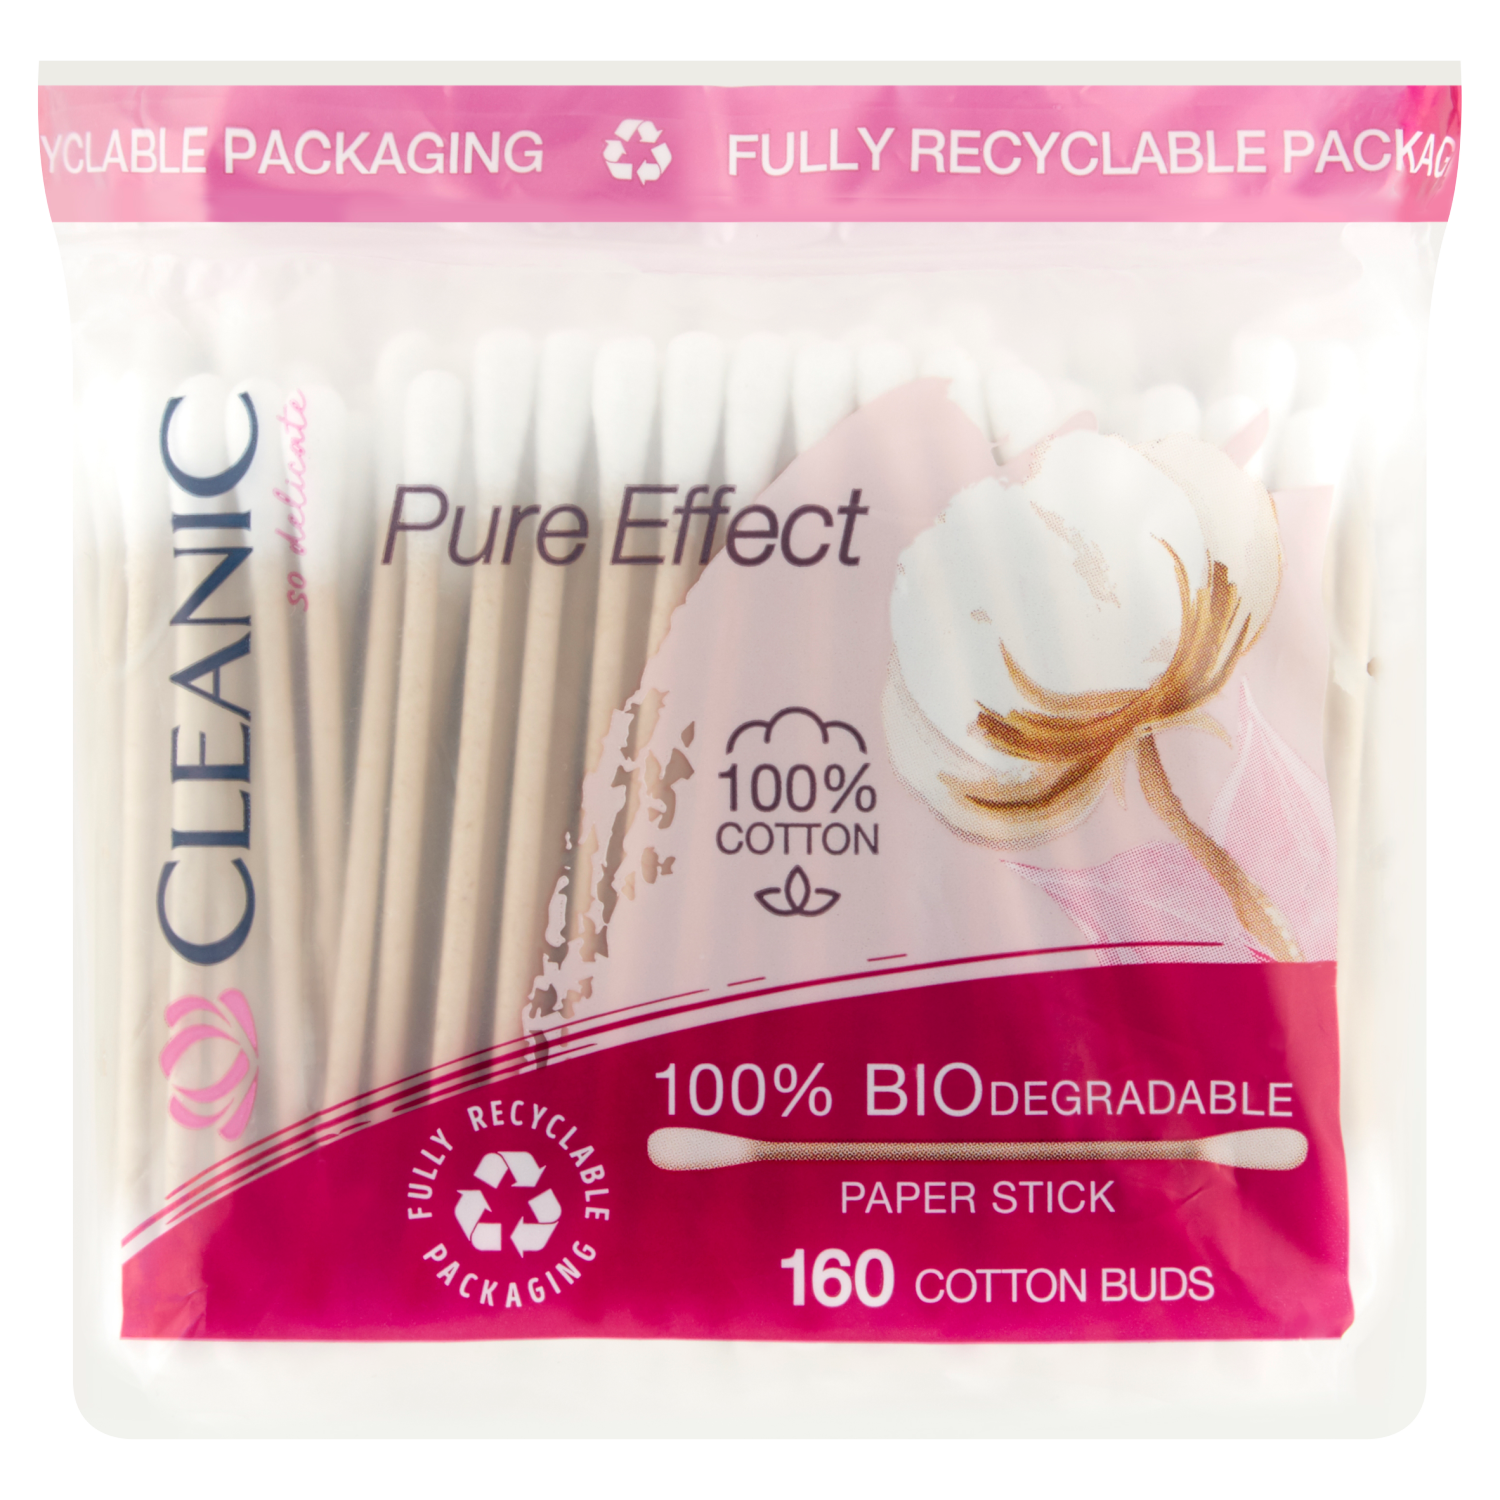 Cleanic Pure Effect ватные палочки, 160 шт/1 упаковка